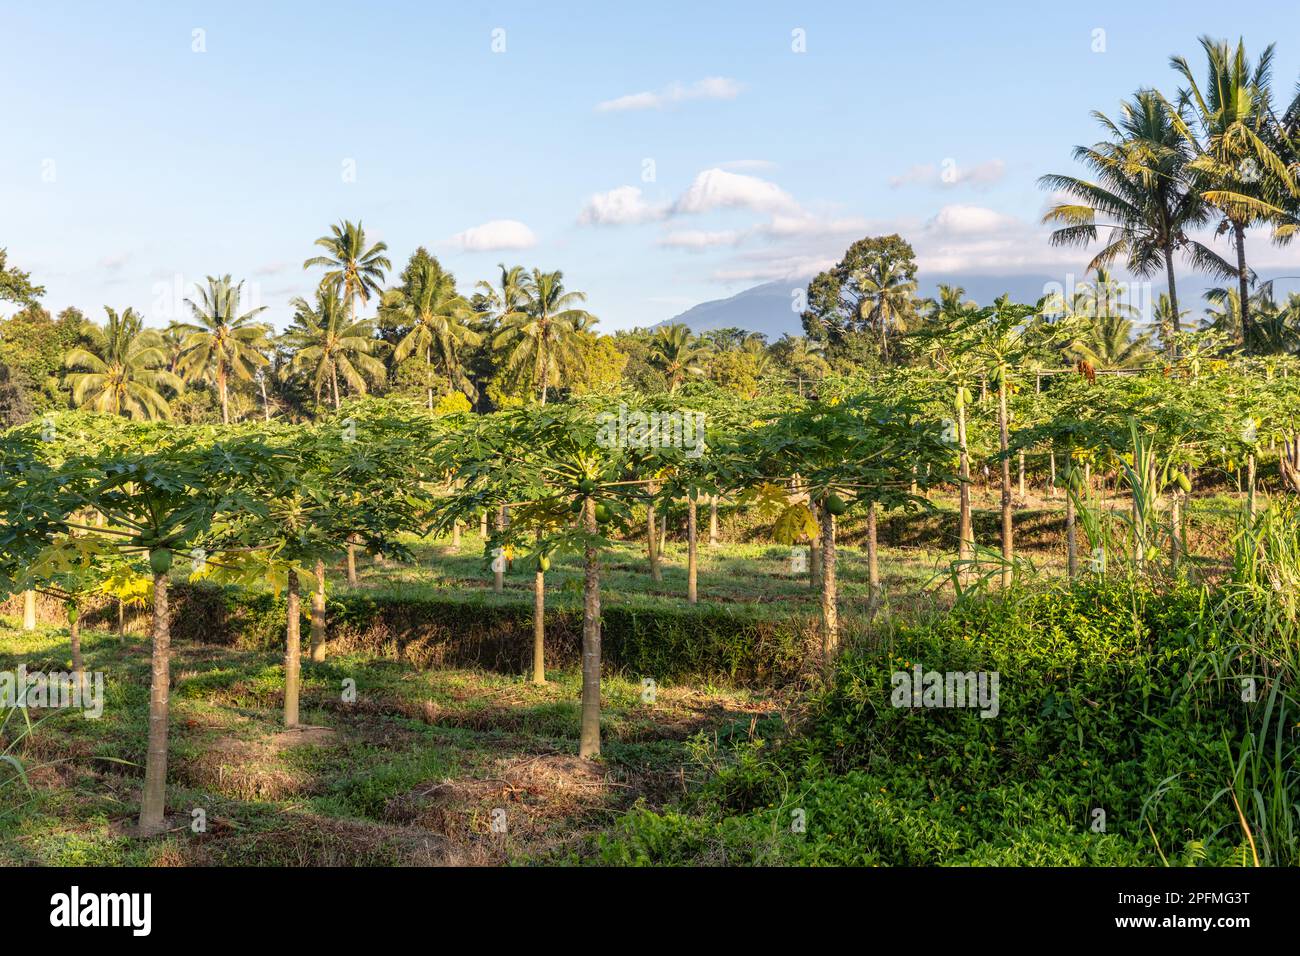 Papaya- und Palmenbäume, die am Rande eines Reisfeldes wachsen. Bali, Indonesien. Stockfoto